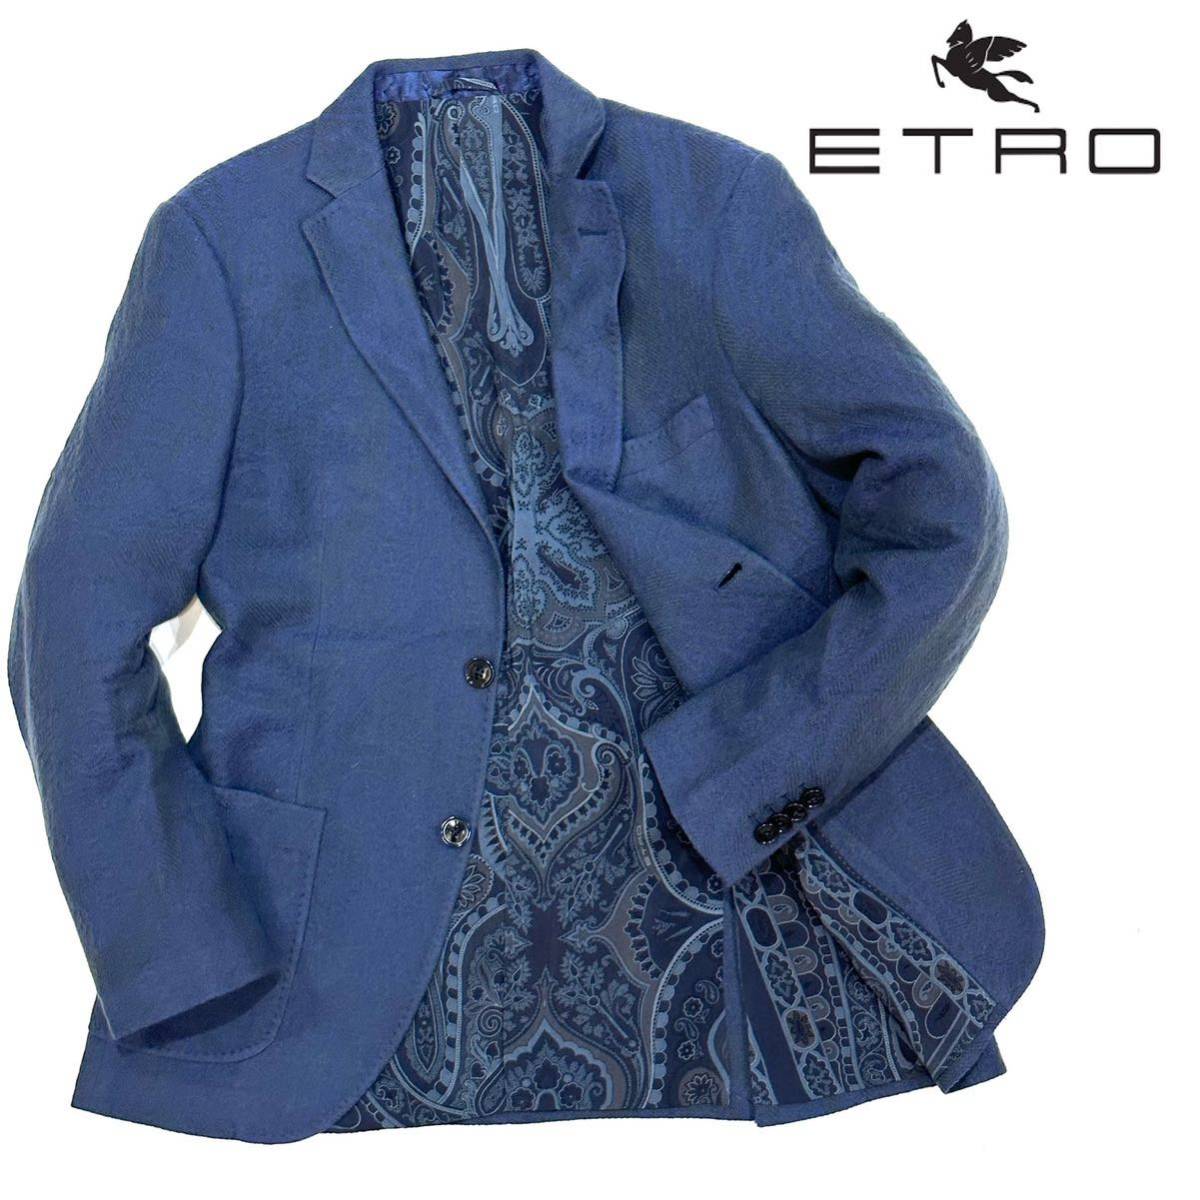 良品 イタリア製 ETRO エトロ 2B 最高級 軽くて柔らかい カシミヤ100% ペイズリー柄 テーラードジャケット(50)ブルー系 メンズ スーツ